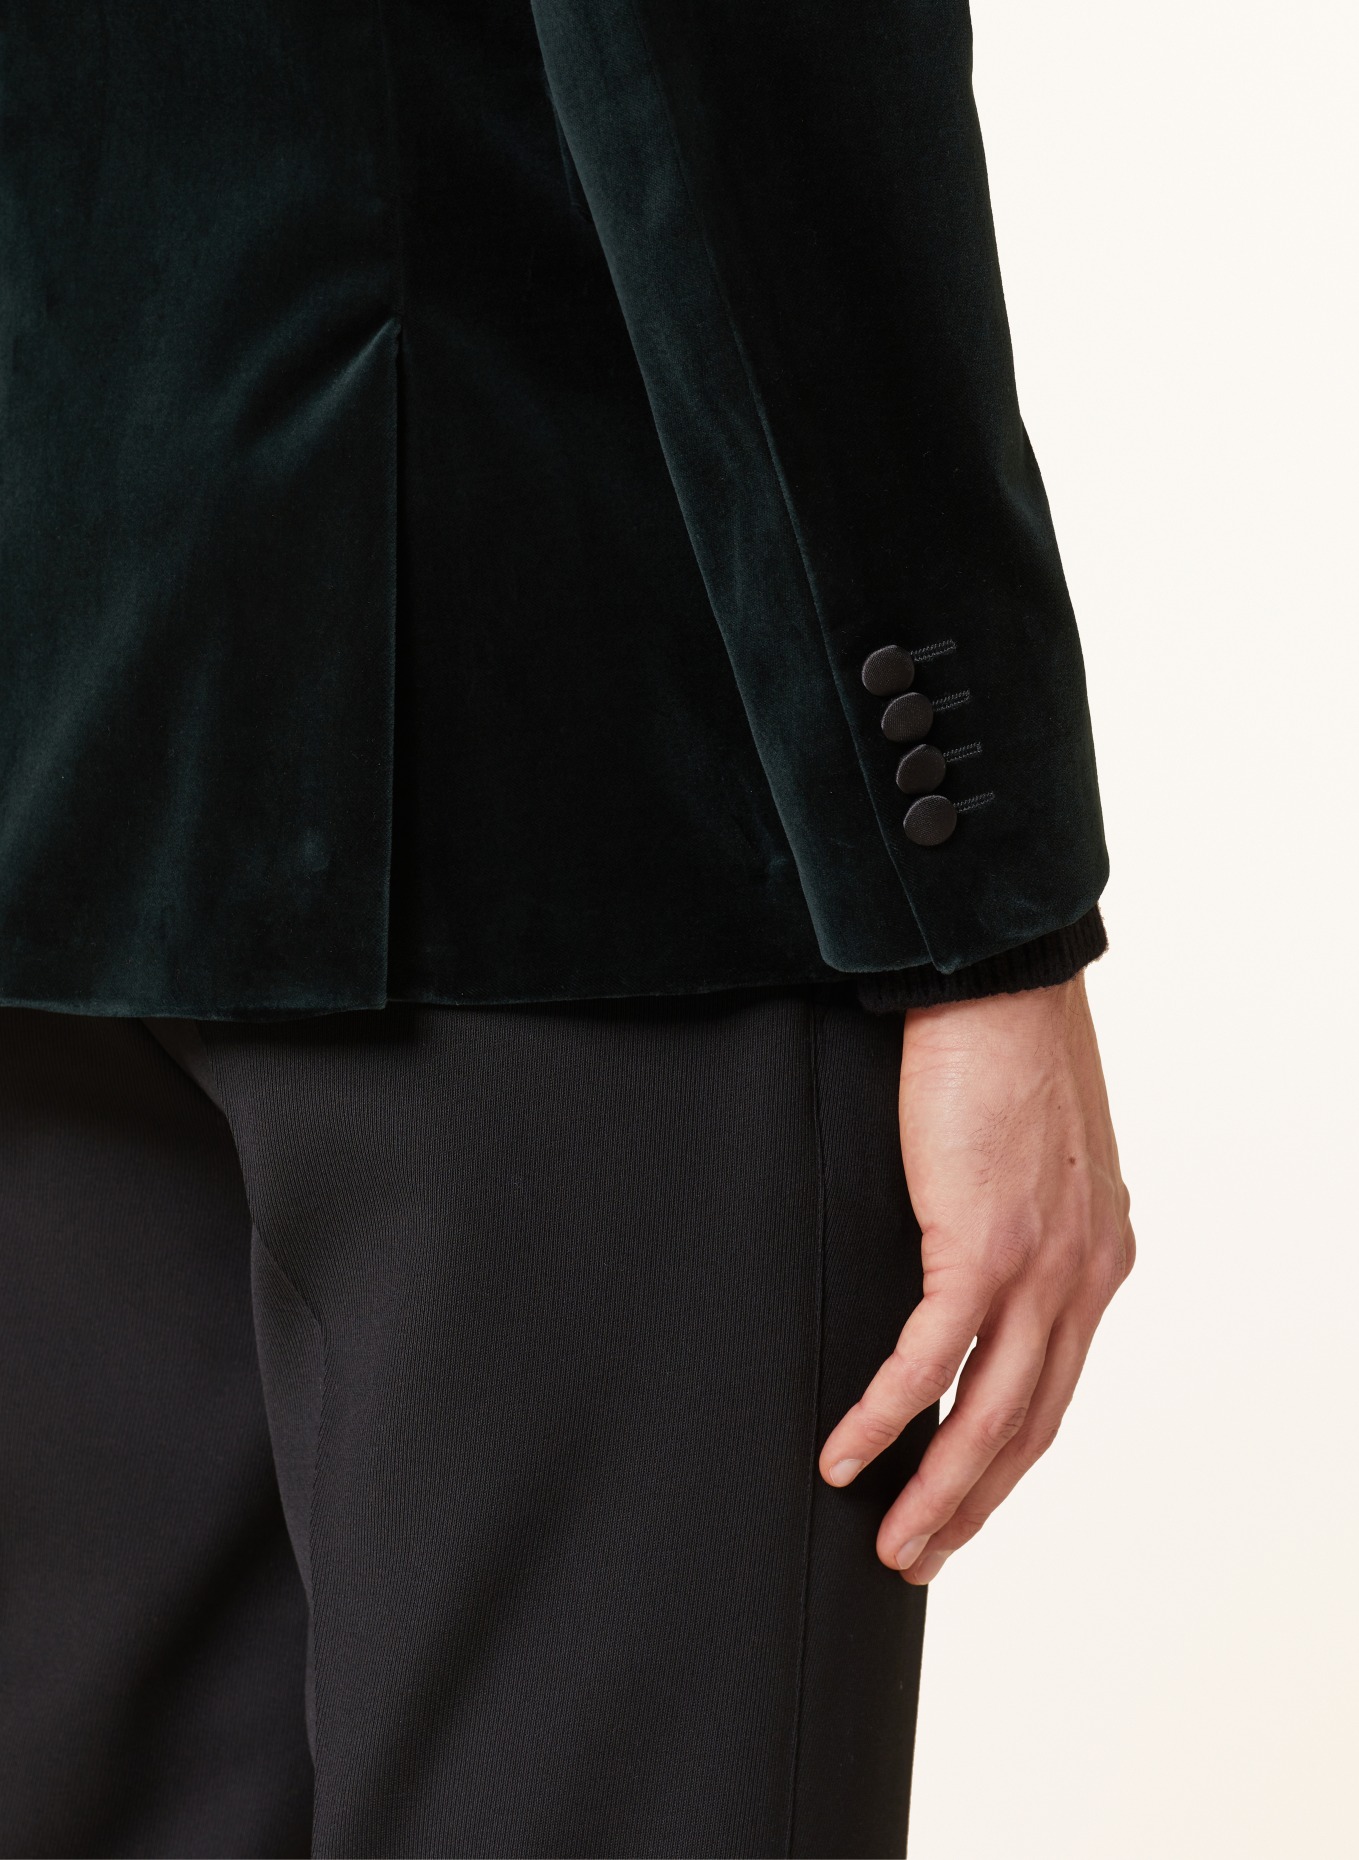 TIGER OF SWEDEN Smoking tailored jacket JEFFERS regular fit made of velvet, Color: DARK GREEN/ BLACK (Image 6)